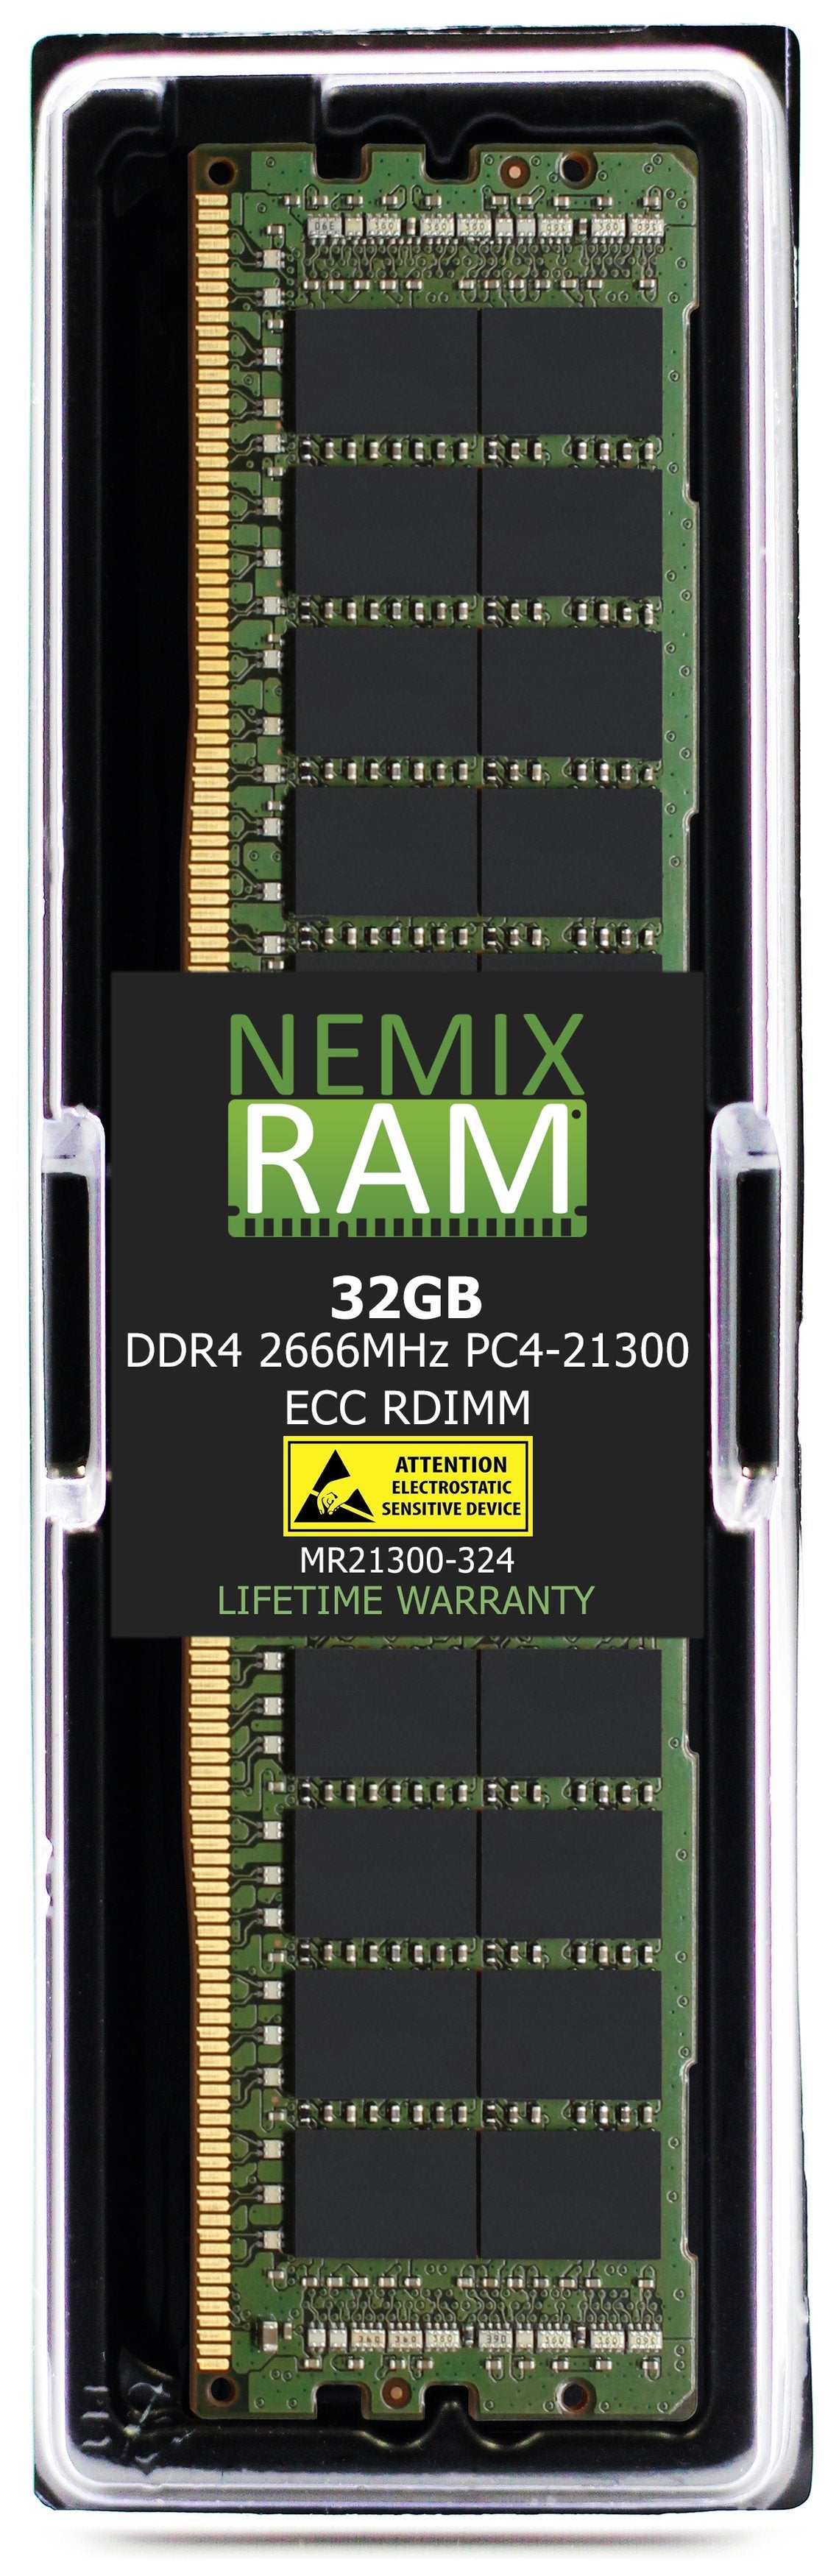 Hynix HMA84GR7JJR4N-VK 32GB DDR4 2666MHZ PC4-21300 RDIMM Compatible Memory Module